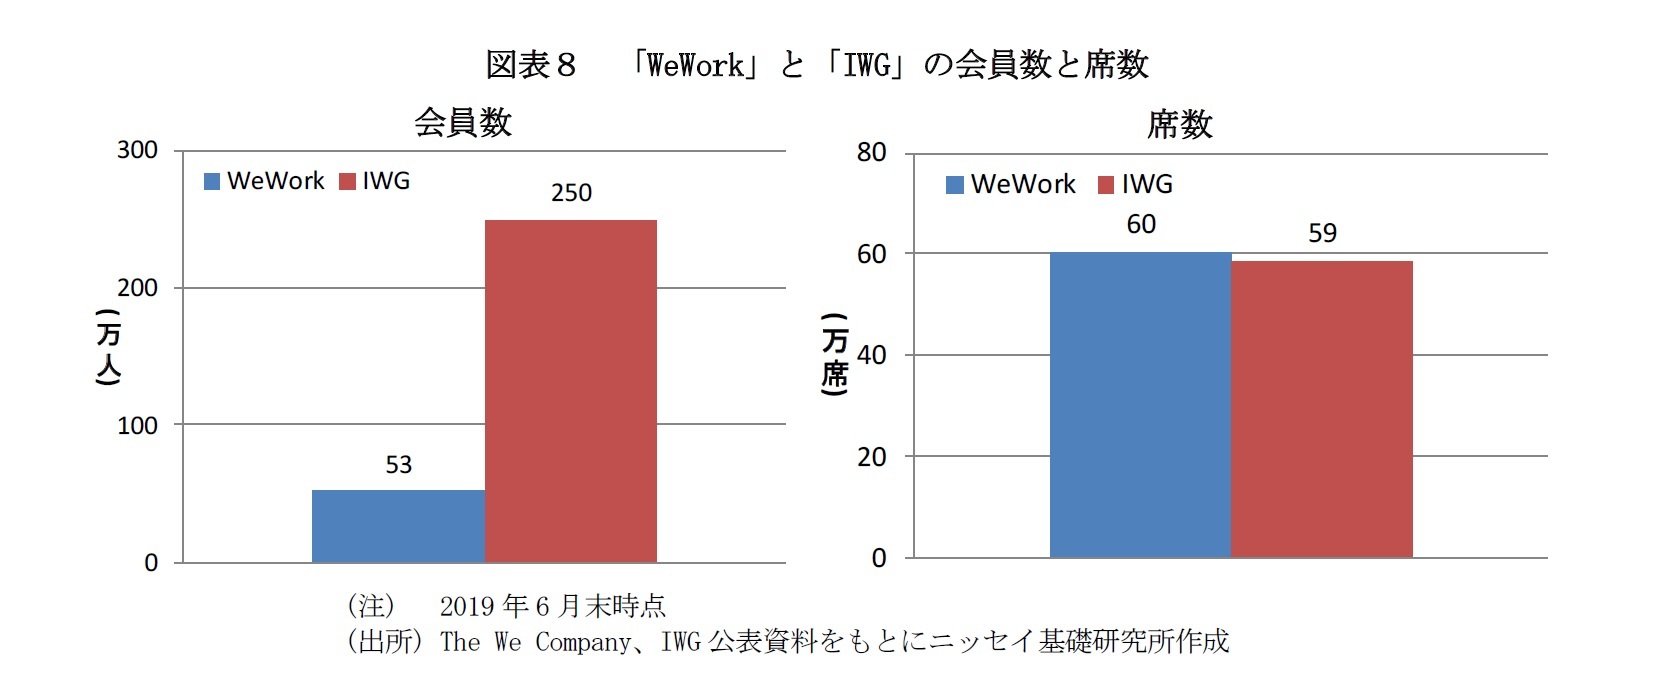 図表８　「WeWork」と「IWG」の会員数と席数